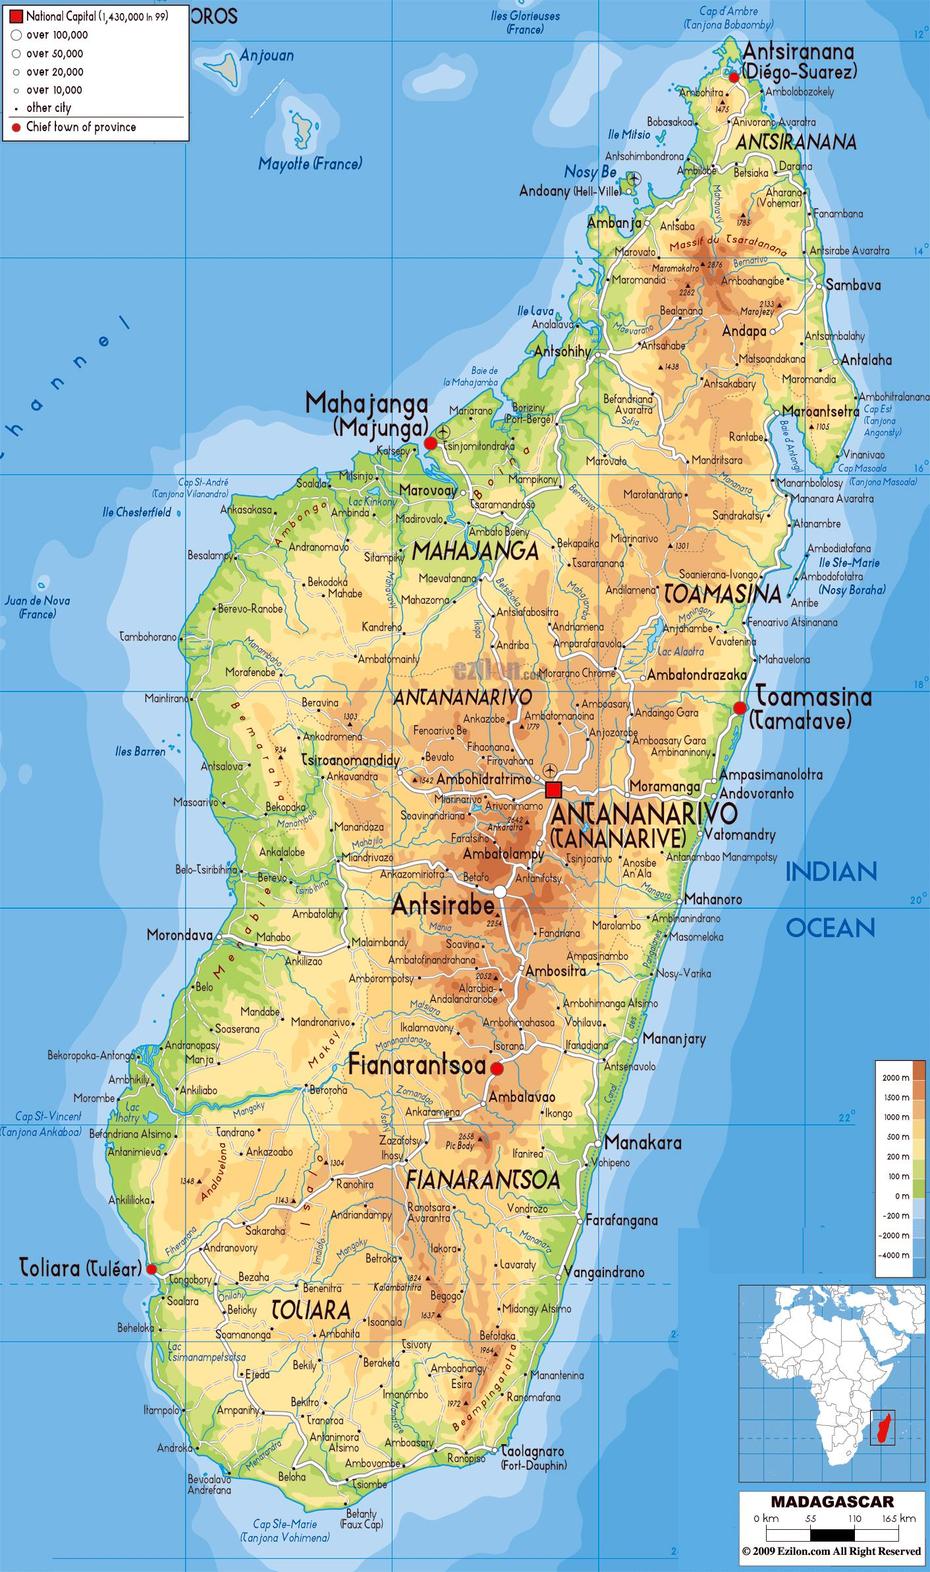 Madagascar Country, Madagascar Climate, Madagascar, Vohilava, Madagascar